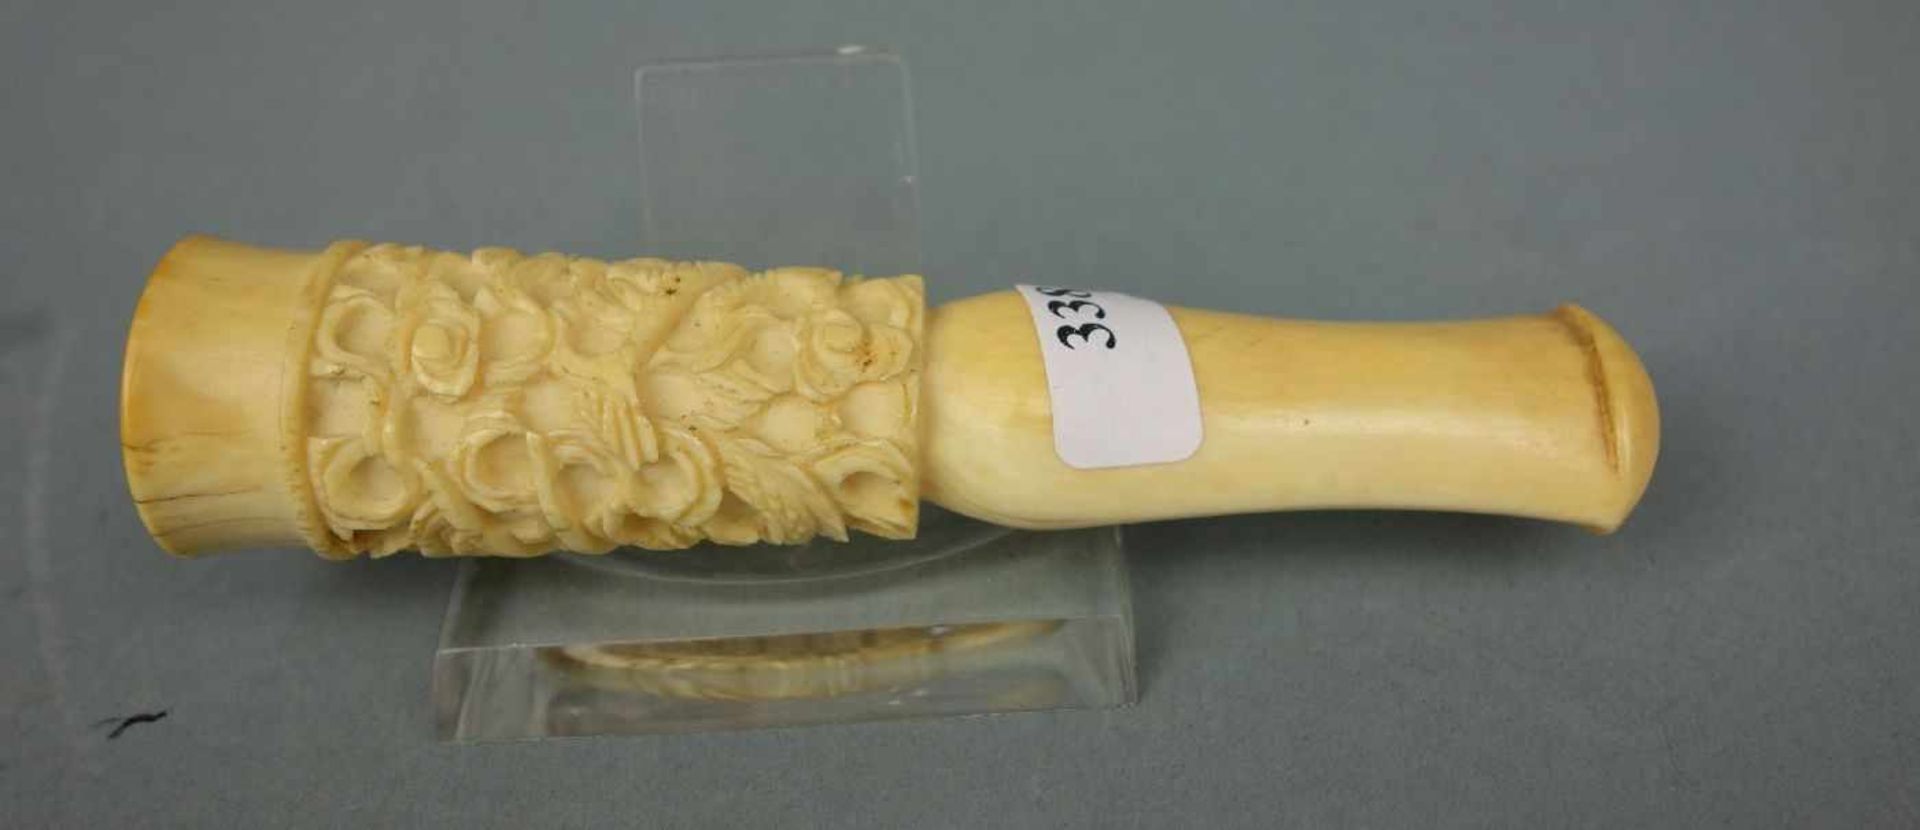 ZIGARRENSPITZE MIT DRACHEN - MOTIV / ivory cigar holder with a dragon, Elfenbein, China, späte - Image 4 of 5